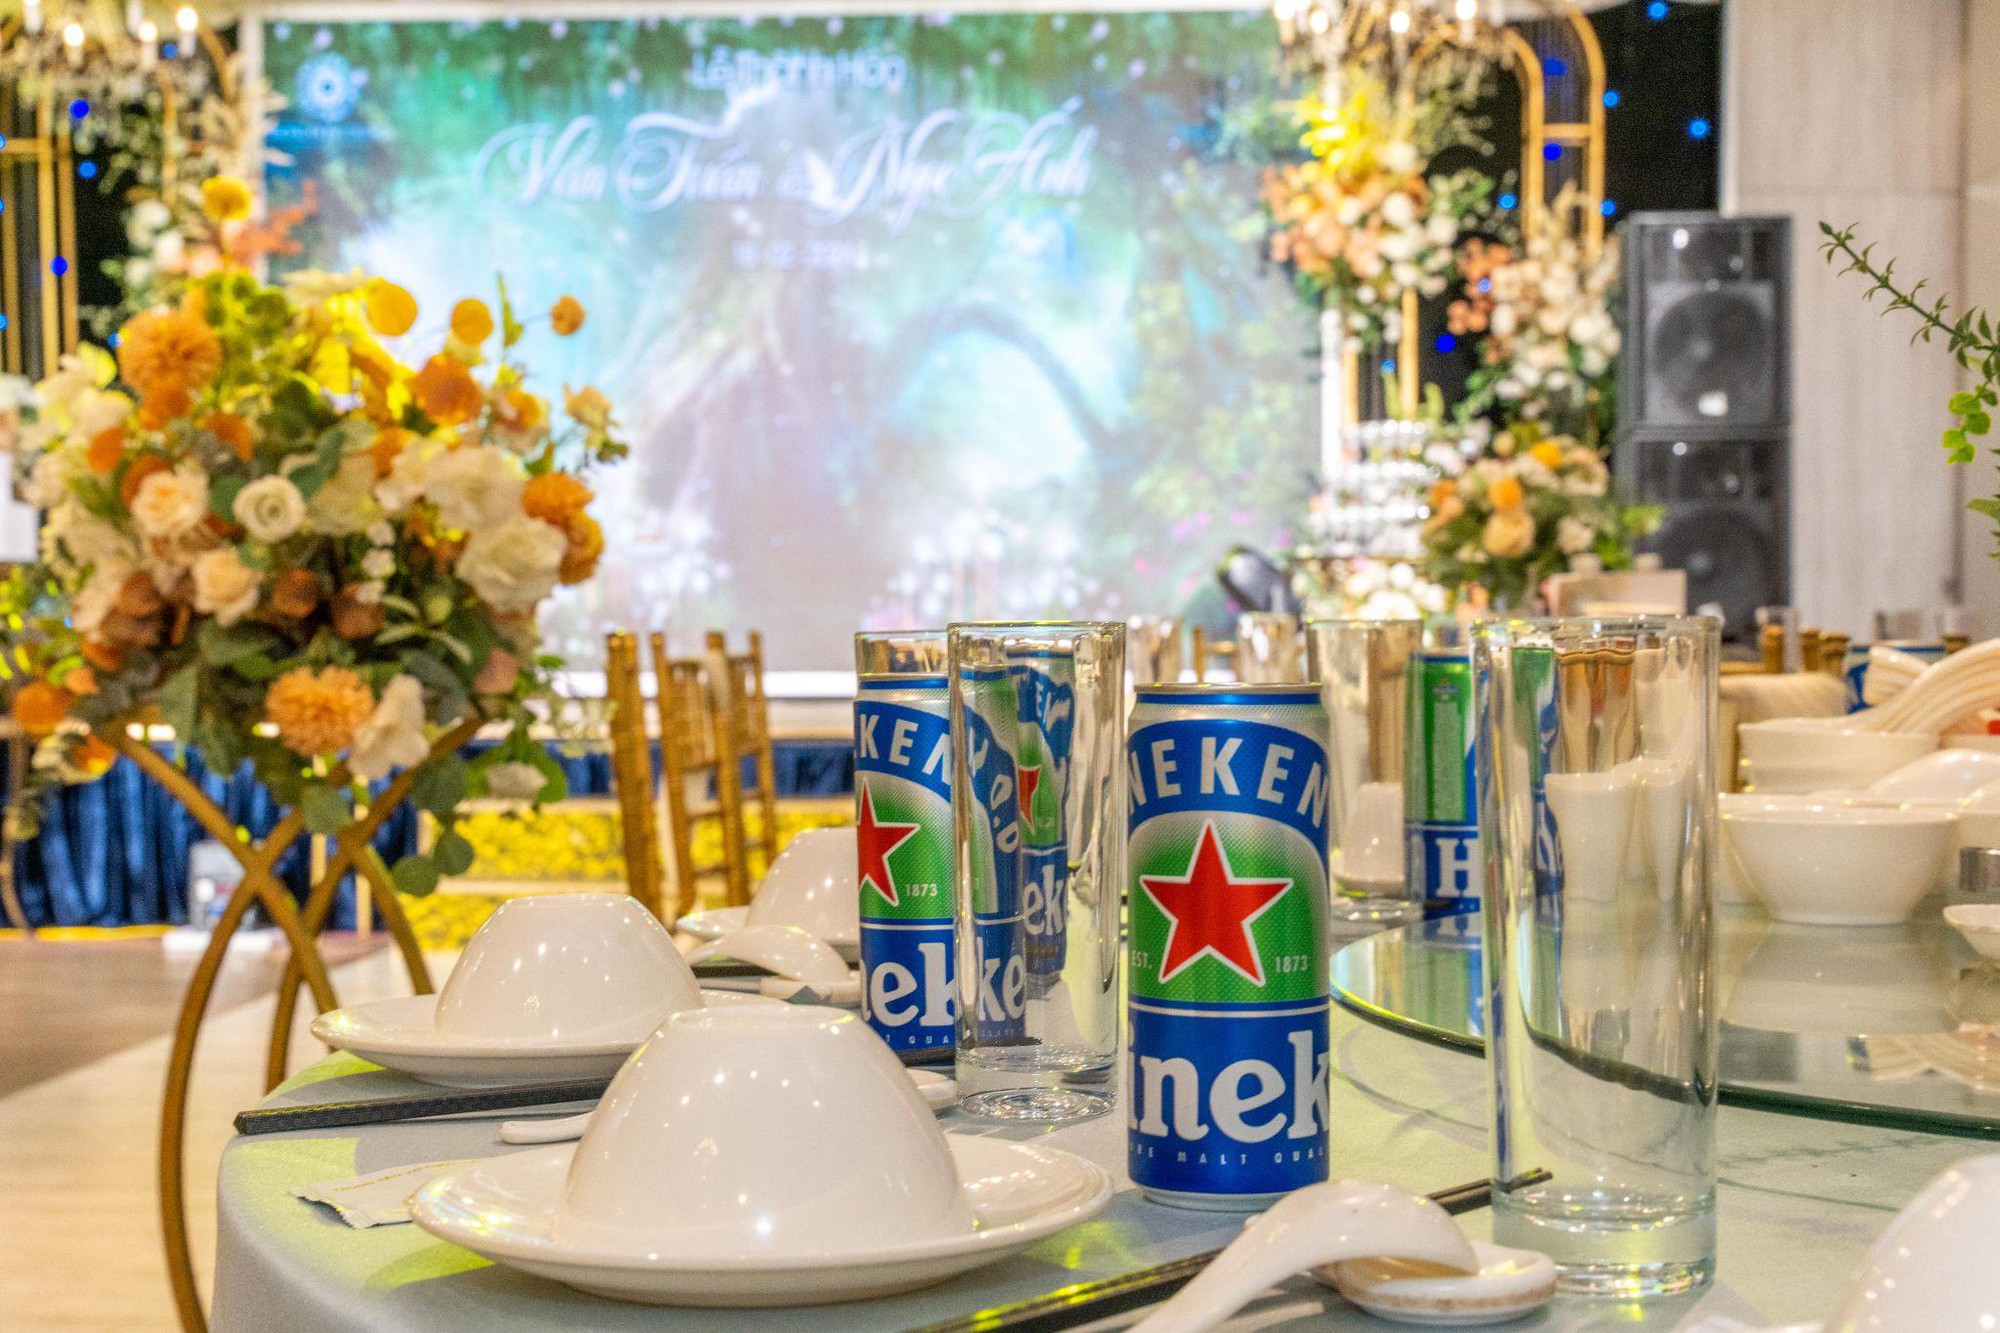 Heineken 0.0 “bắt tay” cùng trung tâm tiệc cưới Trống Đồng Palace dẫn đầu xu hướng “tiệc không cồn” - Ảnh 1.